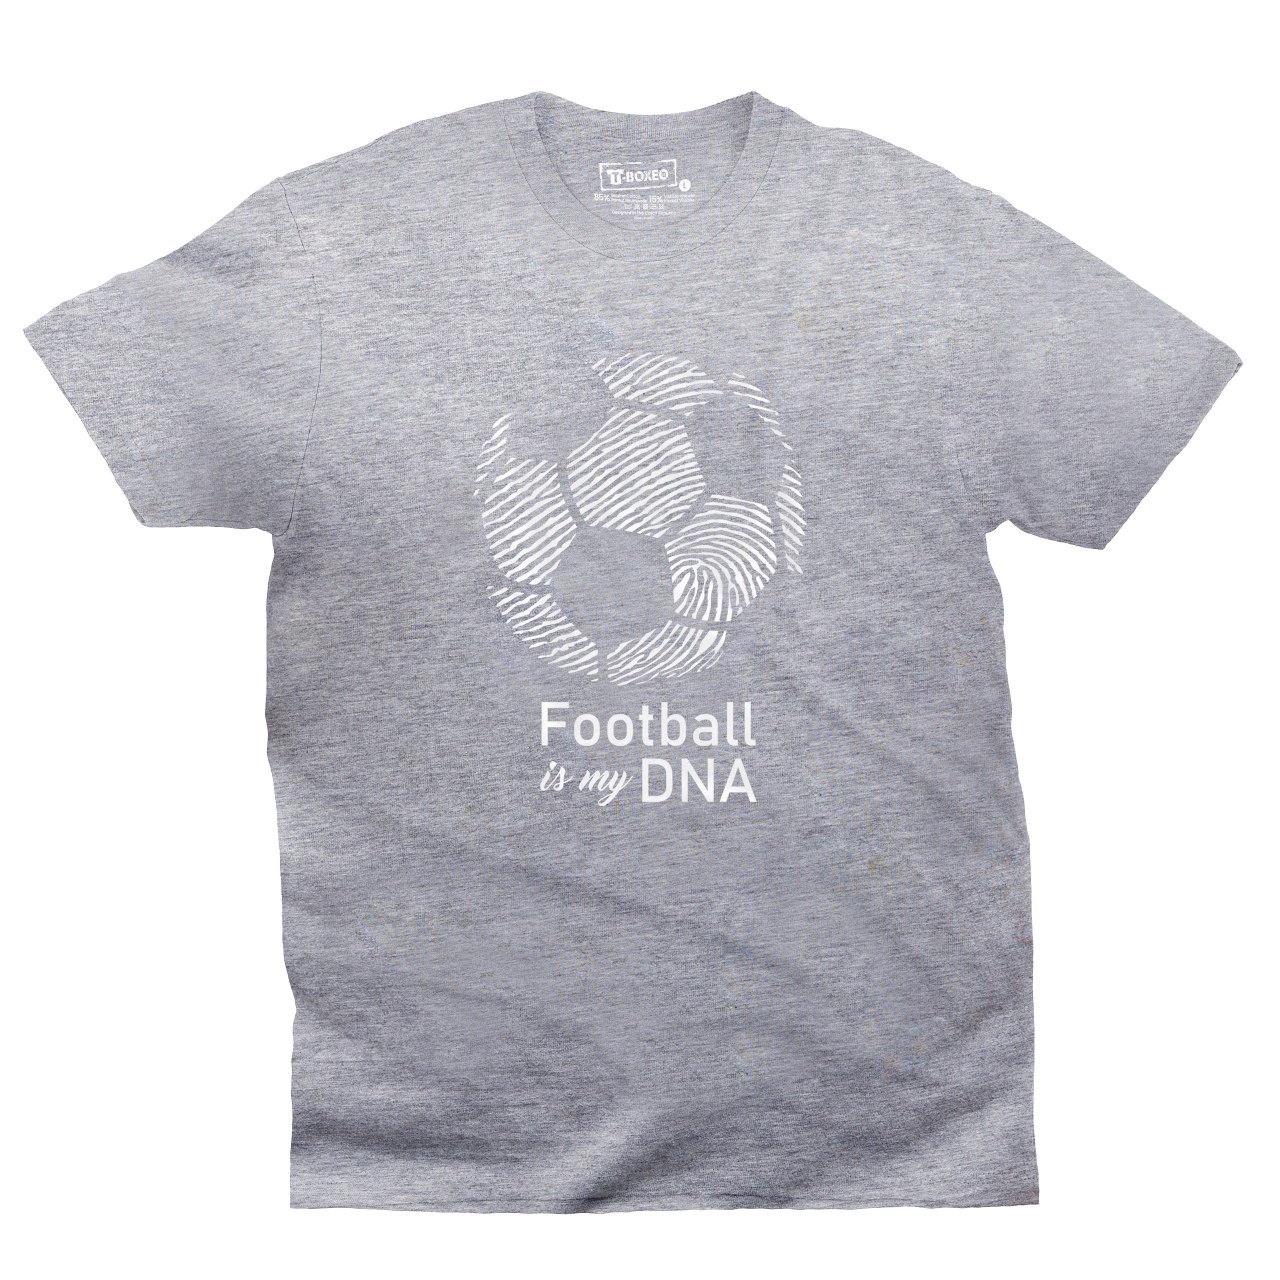 Pánské tričko s potiskem "Football is my DNA"